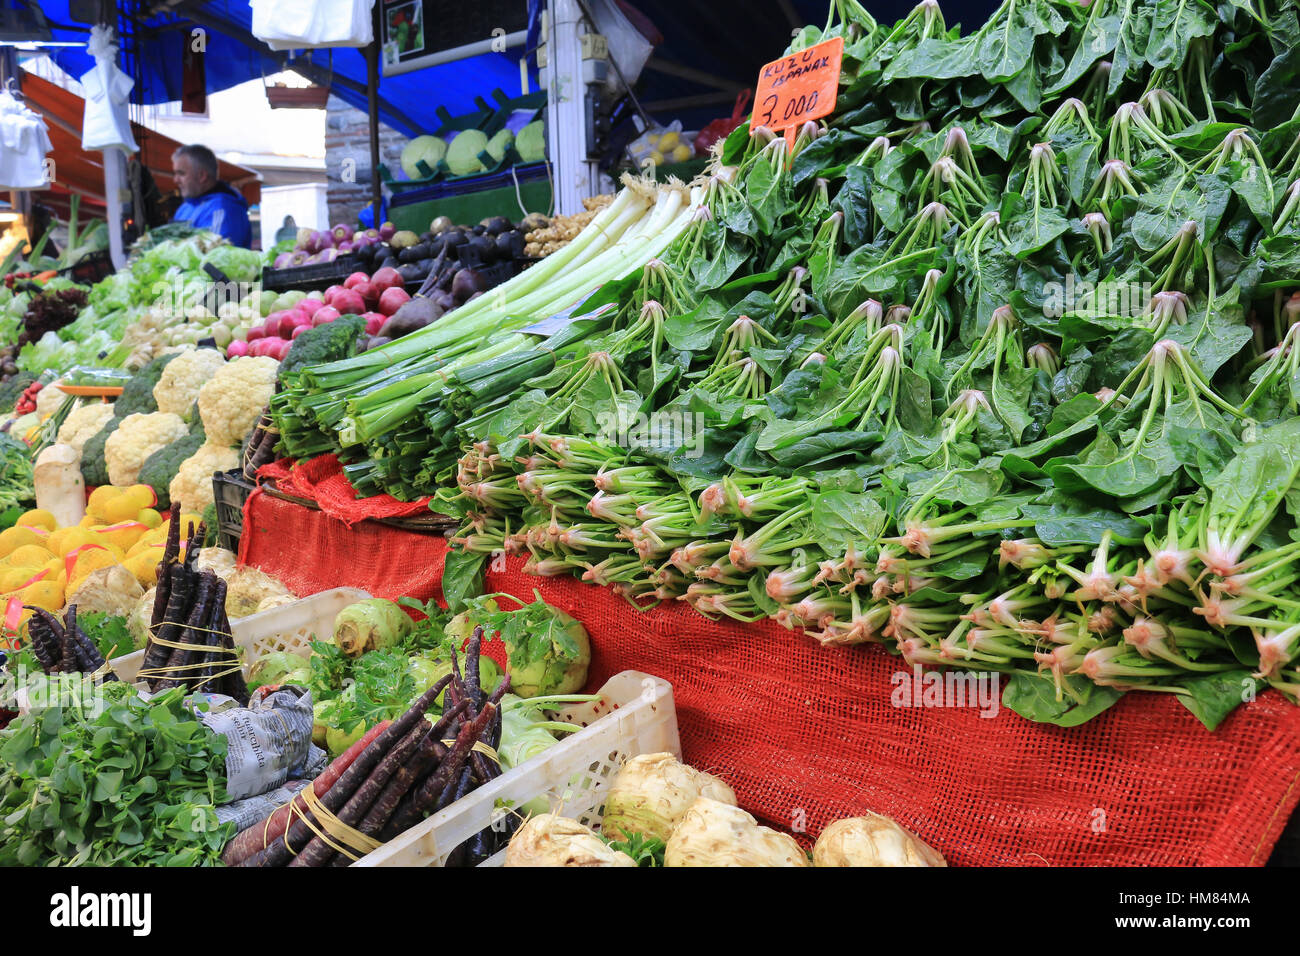 Bursa, Turquie - 23 Février 2016 : les fruits et légumes frais se distingue sur le marché libre en Bursa Turquie Banque D'Images